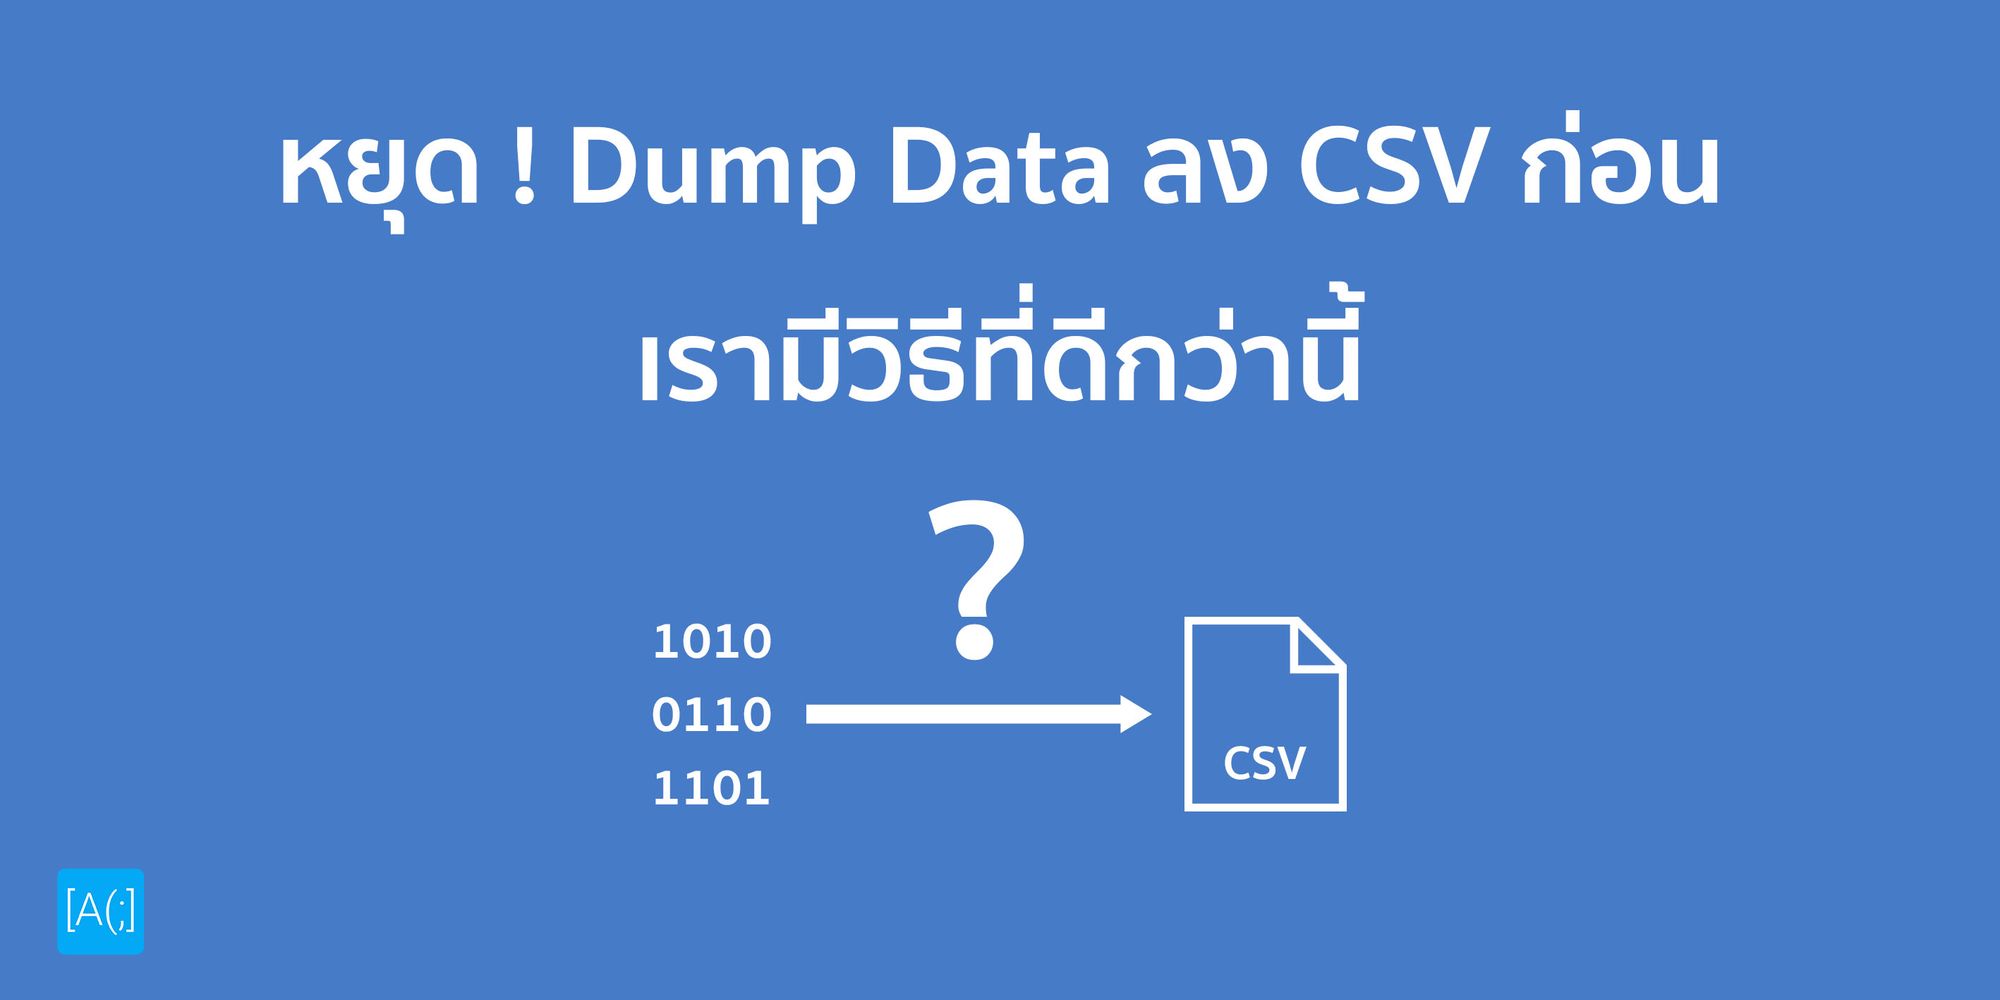 หยุด Dump Data ลง CSV ก่อน เรามีวิธีที่ดีกว่านี้